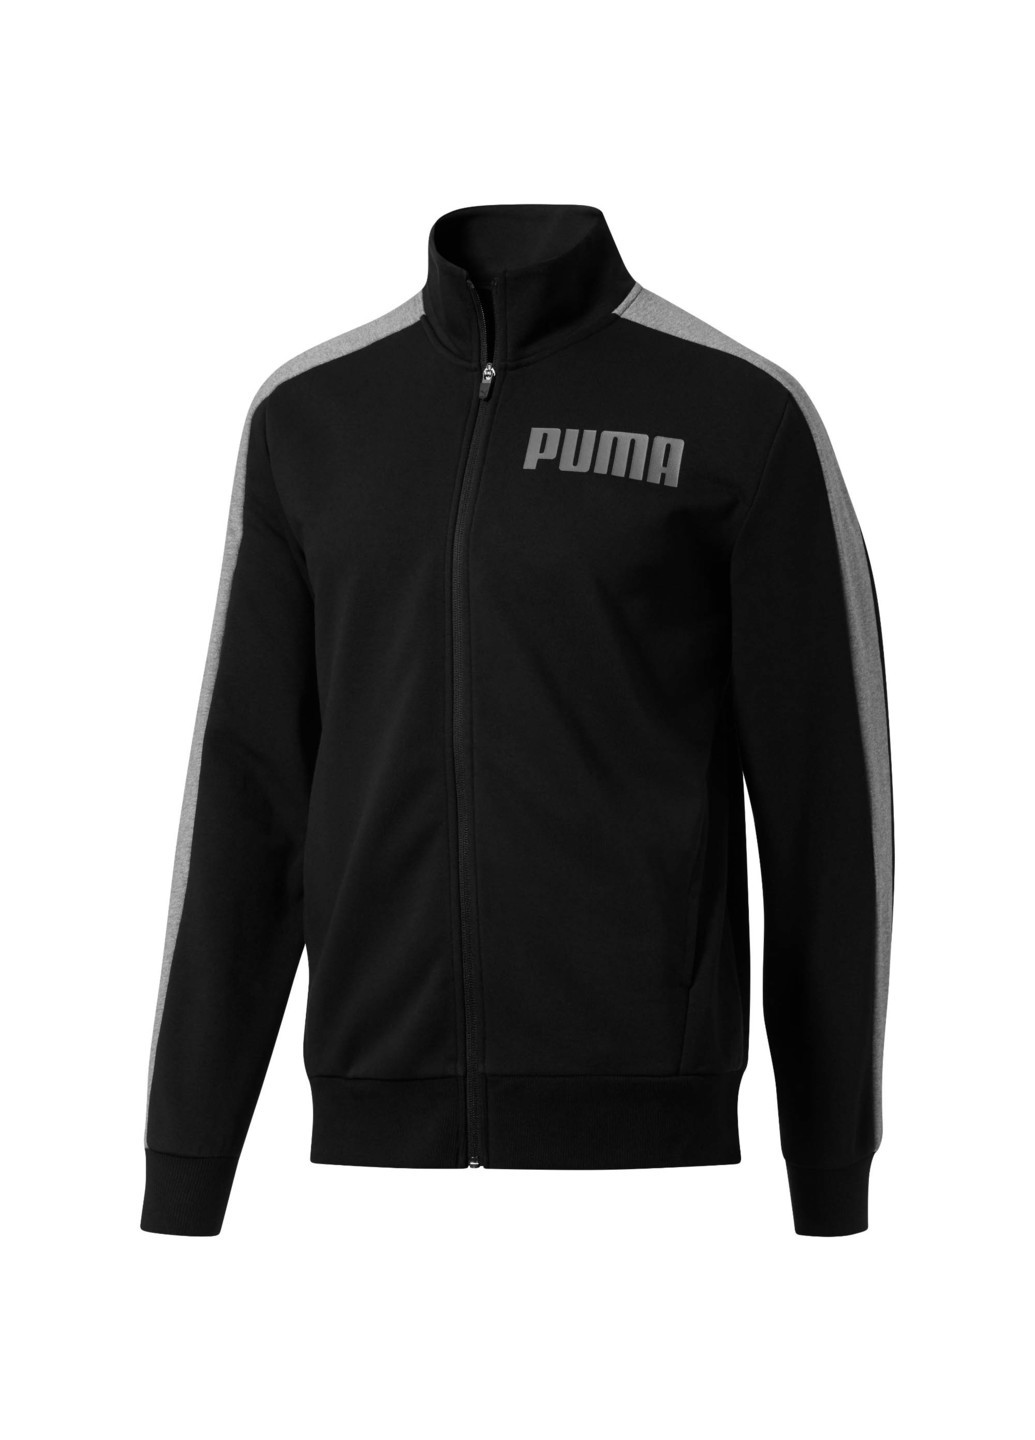 Олимпійка Puma Contrast Track Jacket FT M чорна спортивна